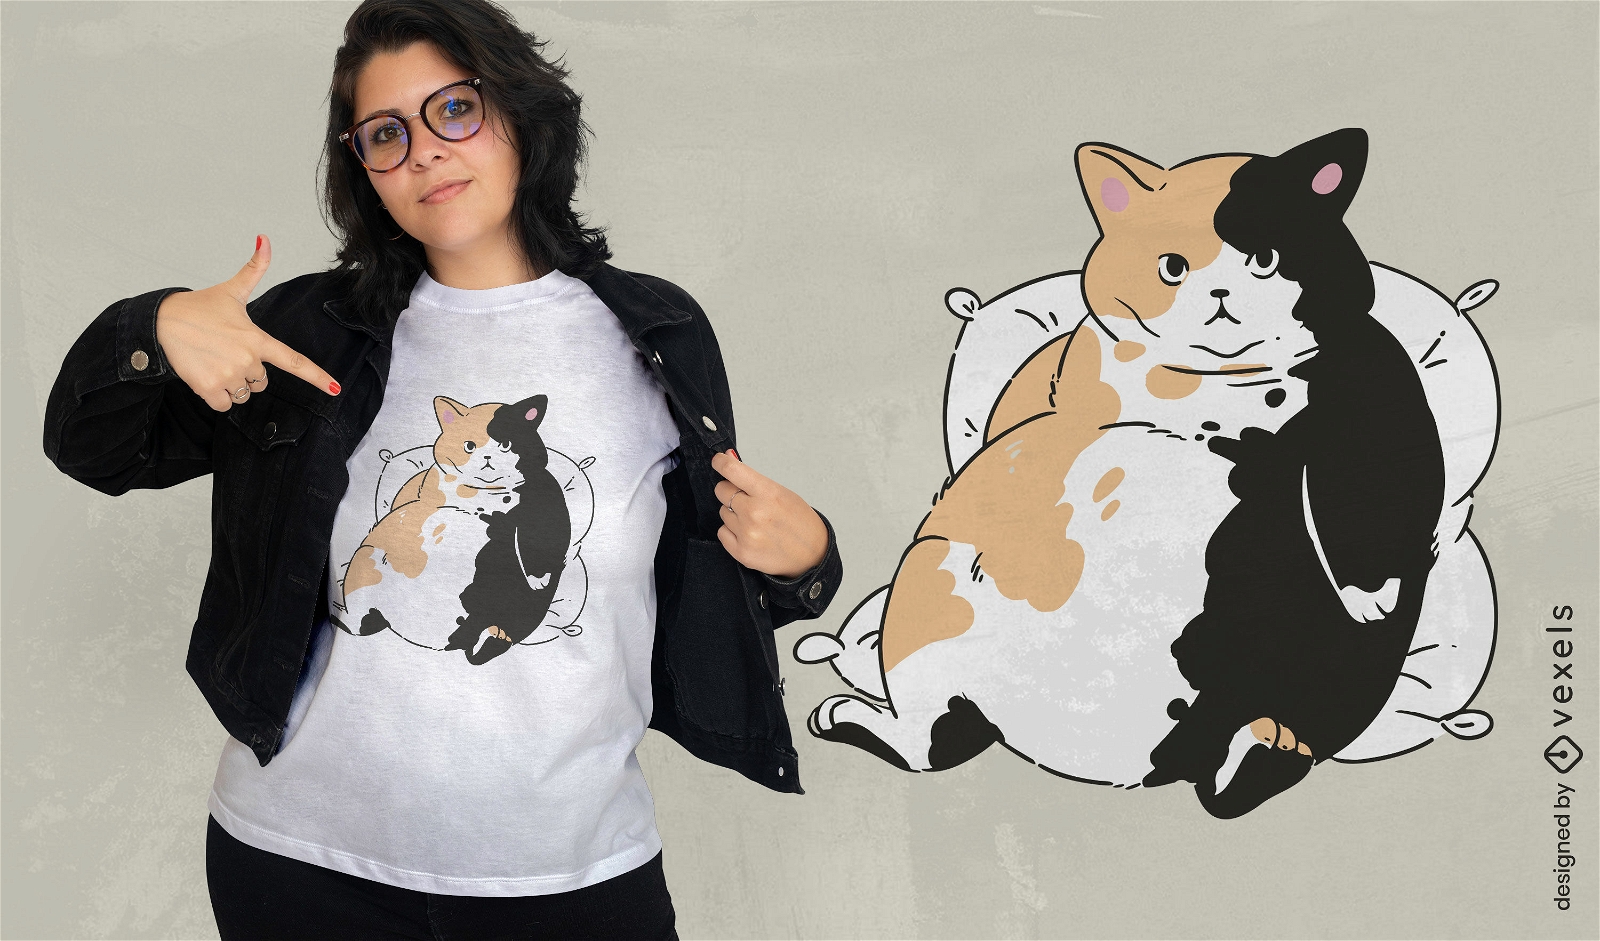 Ruhendes T-Shirt Design der fetten Katze